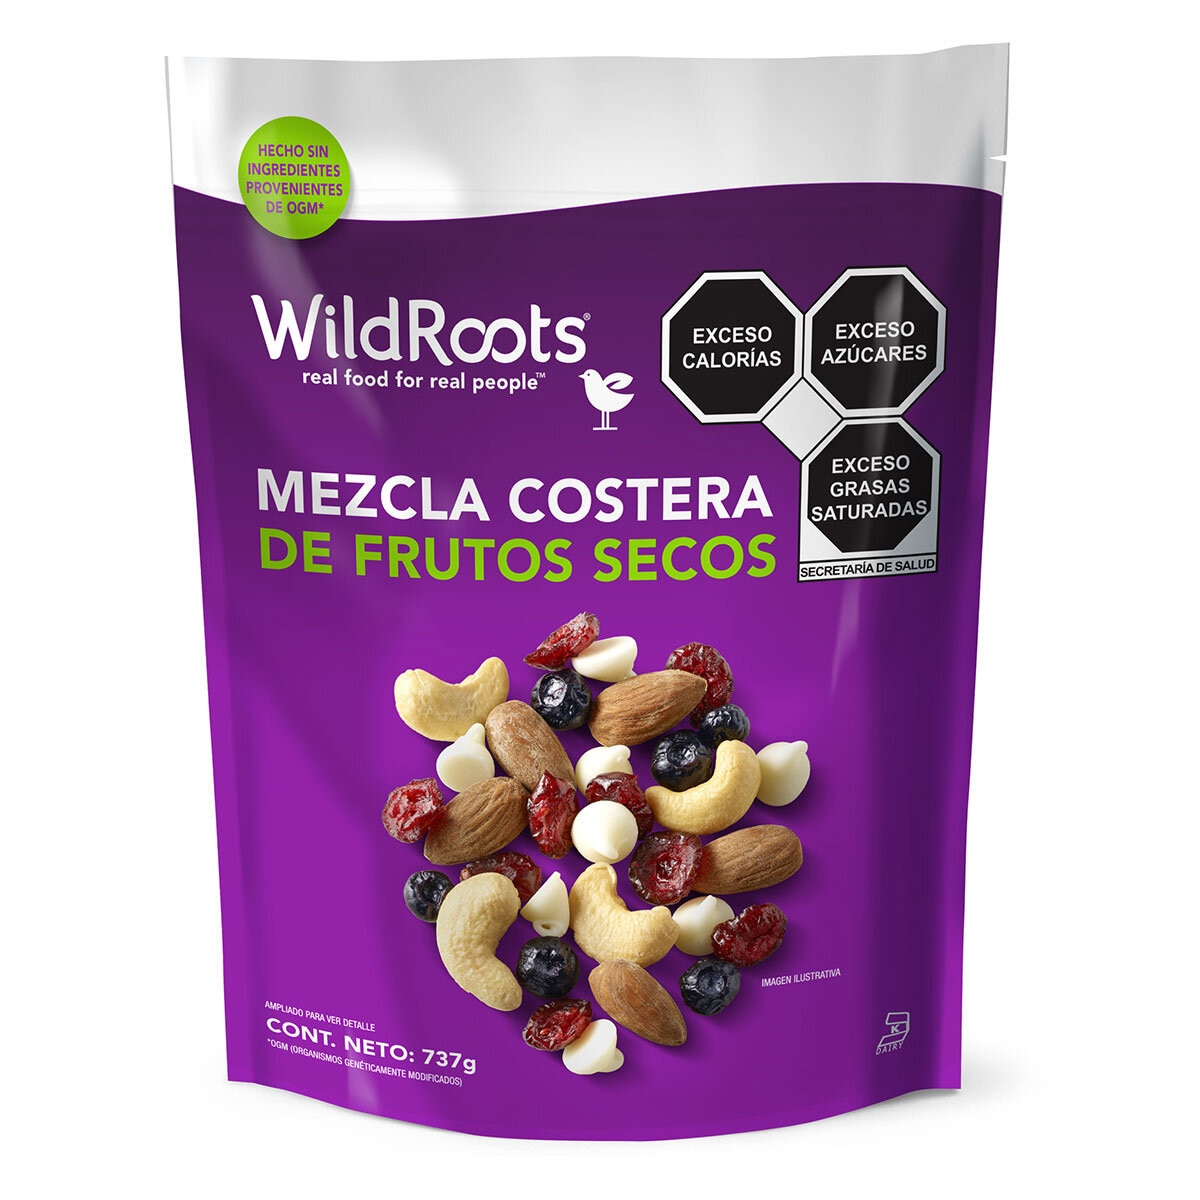 Wild Roots Mezcla Costera de Frutos Secos 737 g